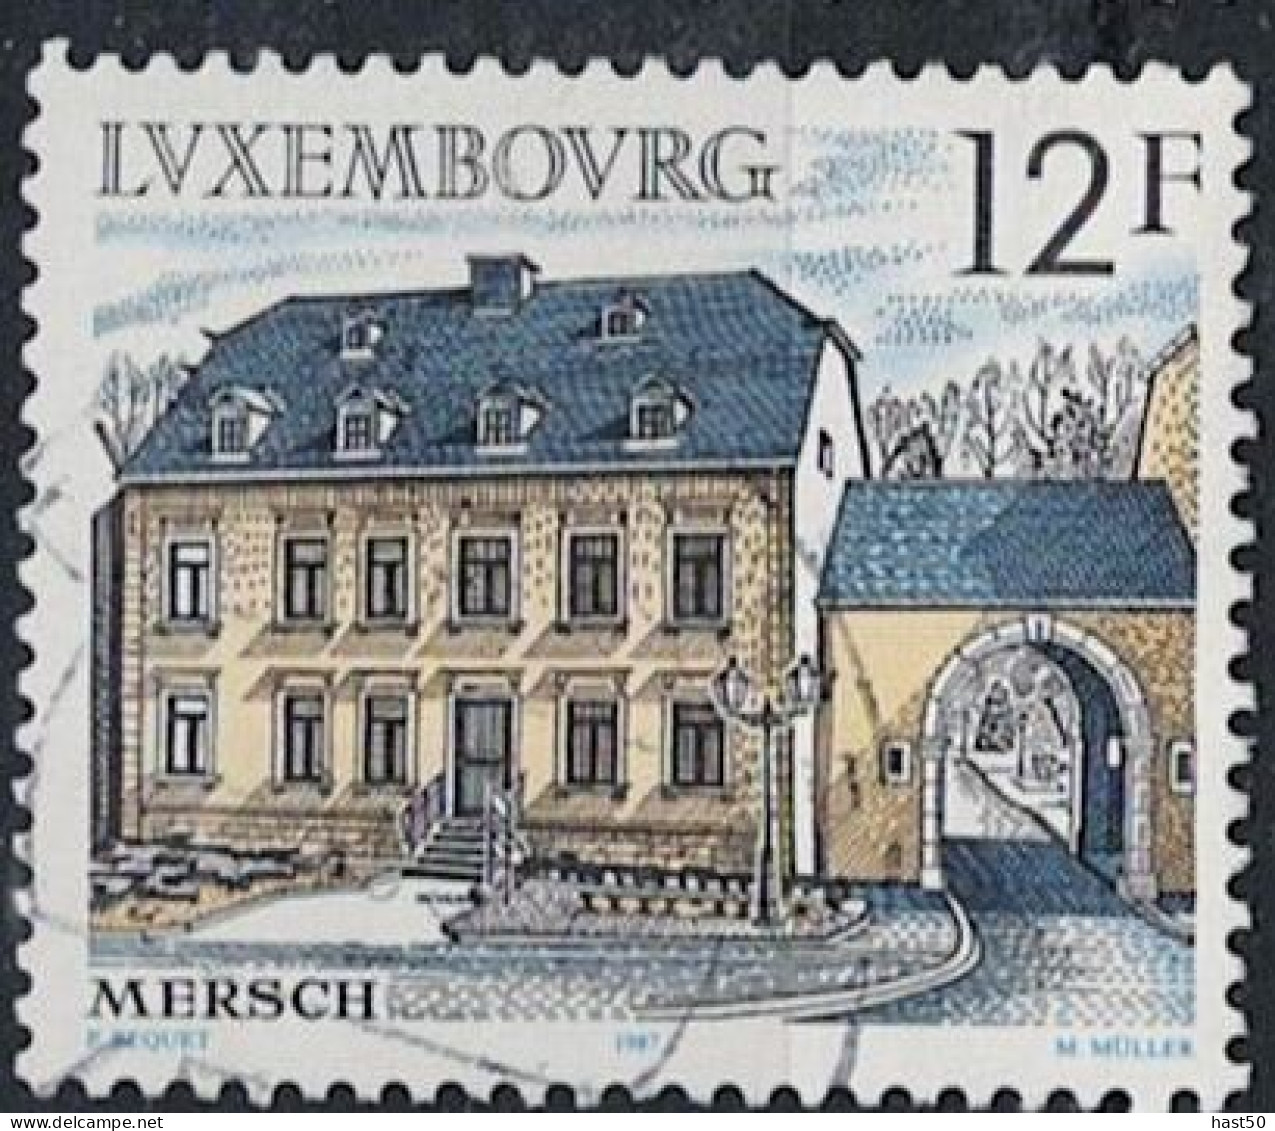 Luxemburg - Bürgerhaus, Mersch (MiNr: 1181) 1987 - Gest Used Obl - Gebruikt